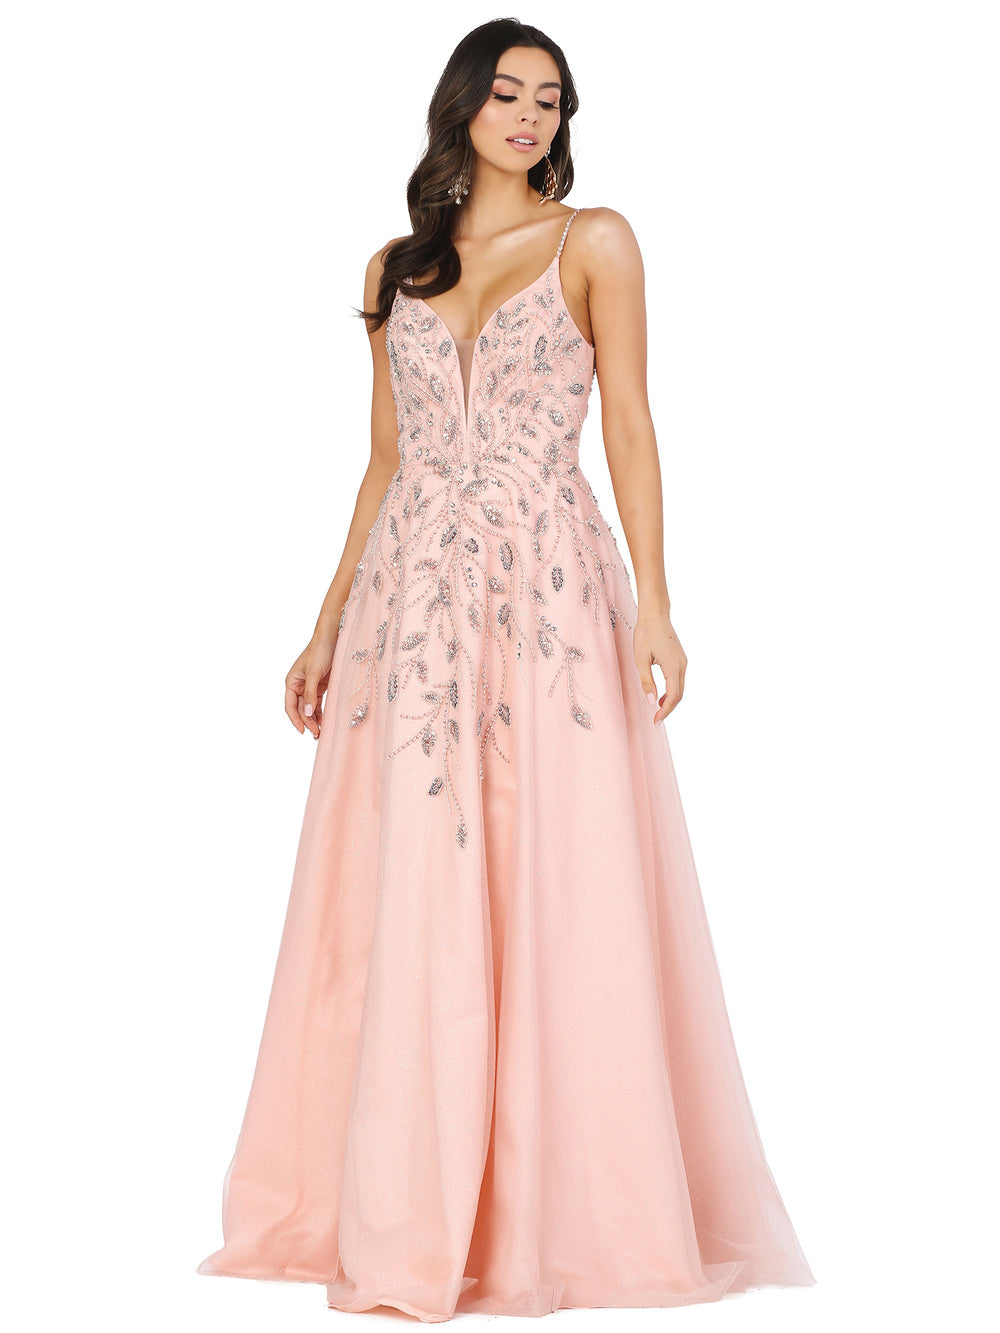 Dancing Queen - 2965 Sequin Beads V-Neck Dress In Pink